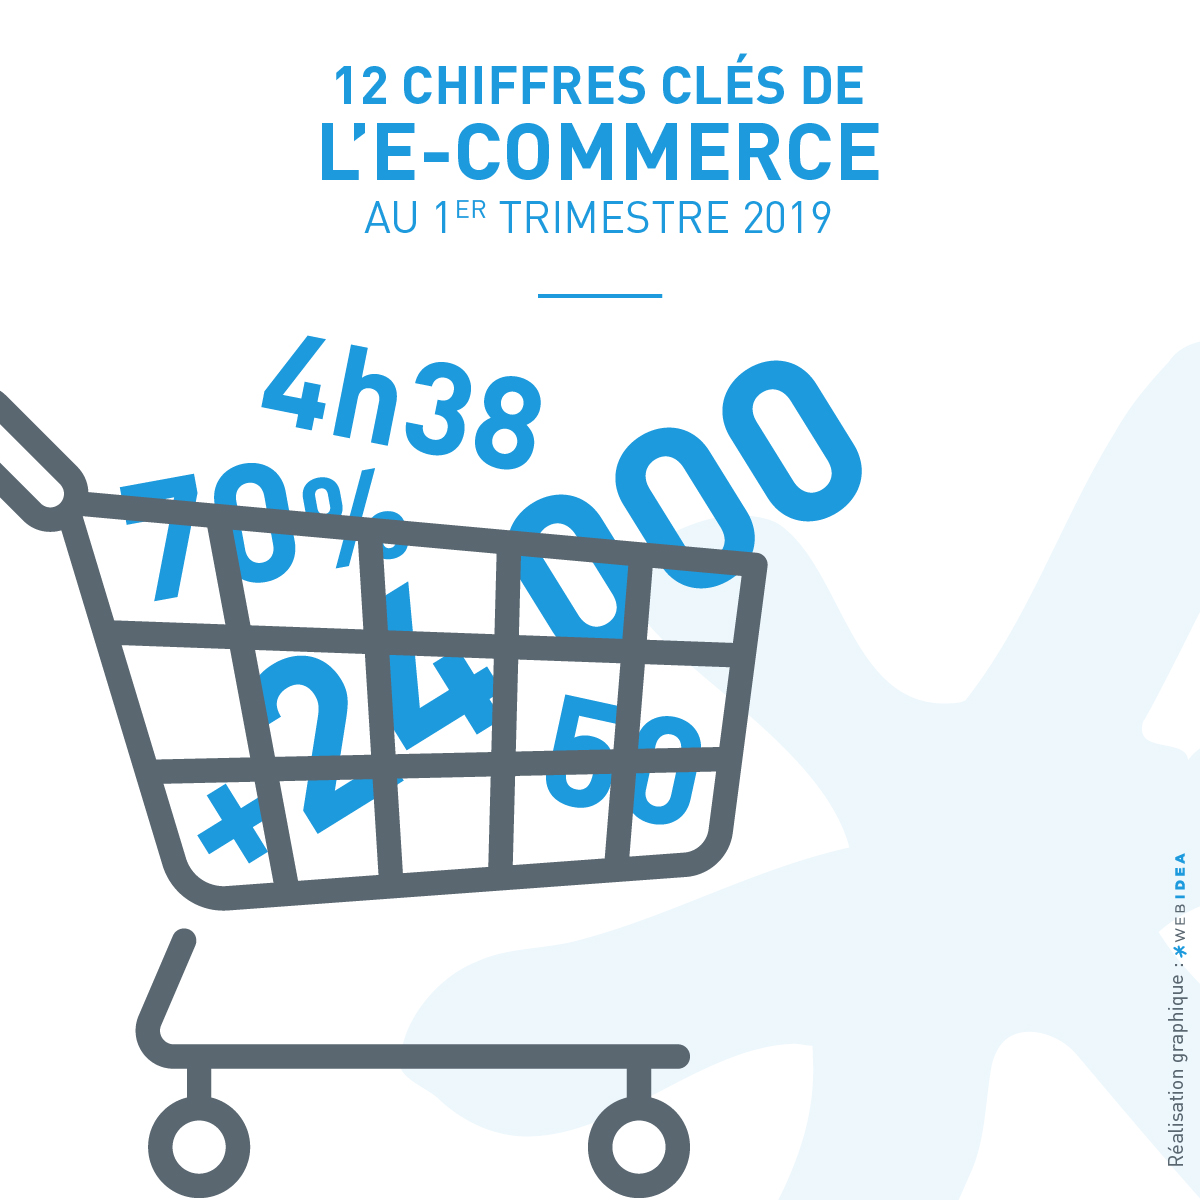 Icone illustration chiffres clés du ecommerce en france au premier trimestre 2019